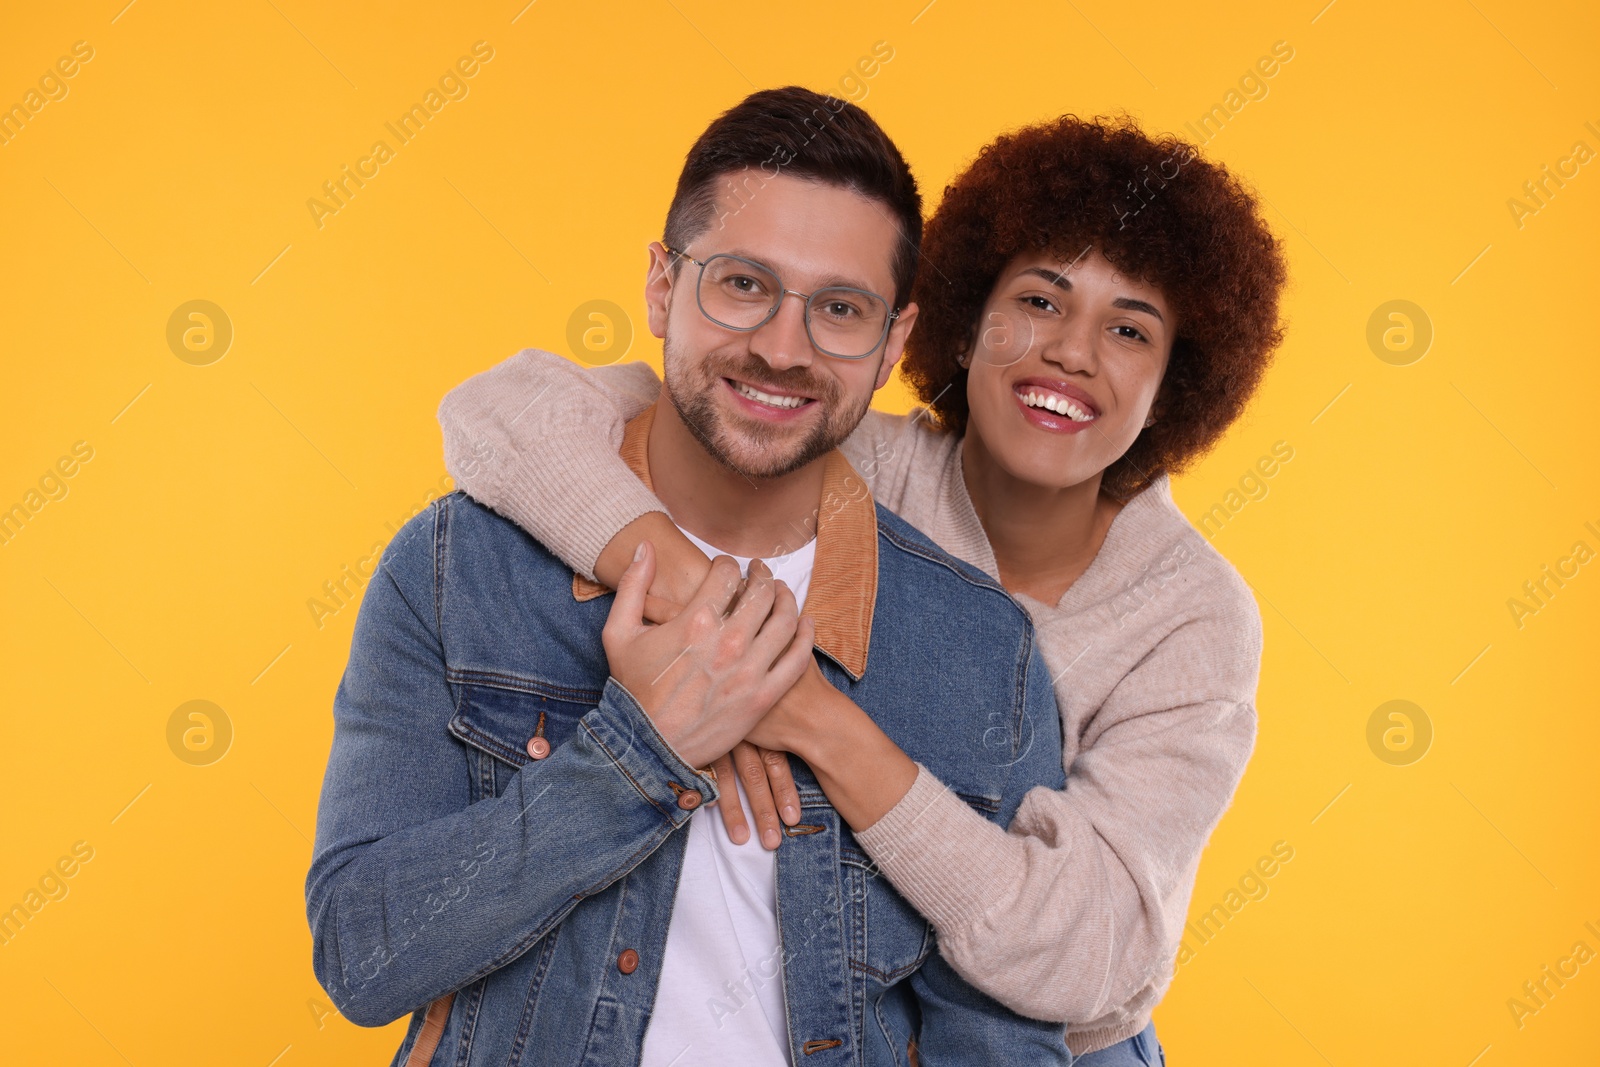 Photo of International dating. Happy couple hugging on orange background